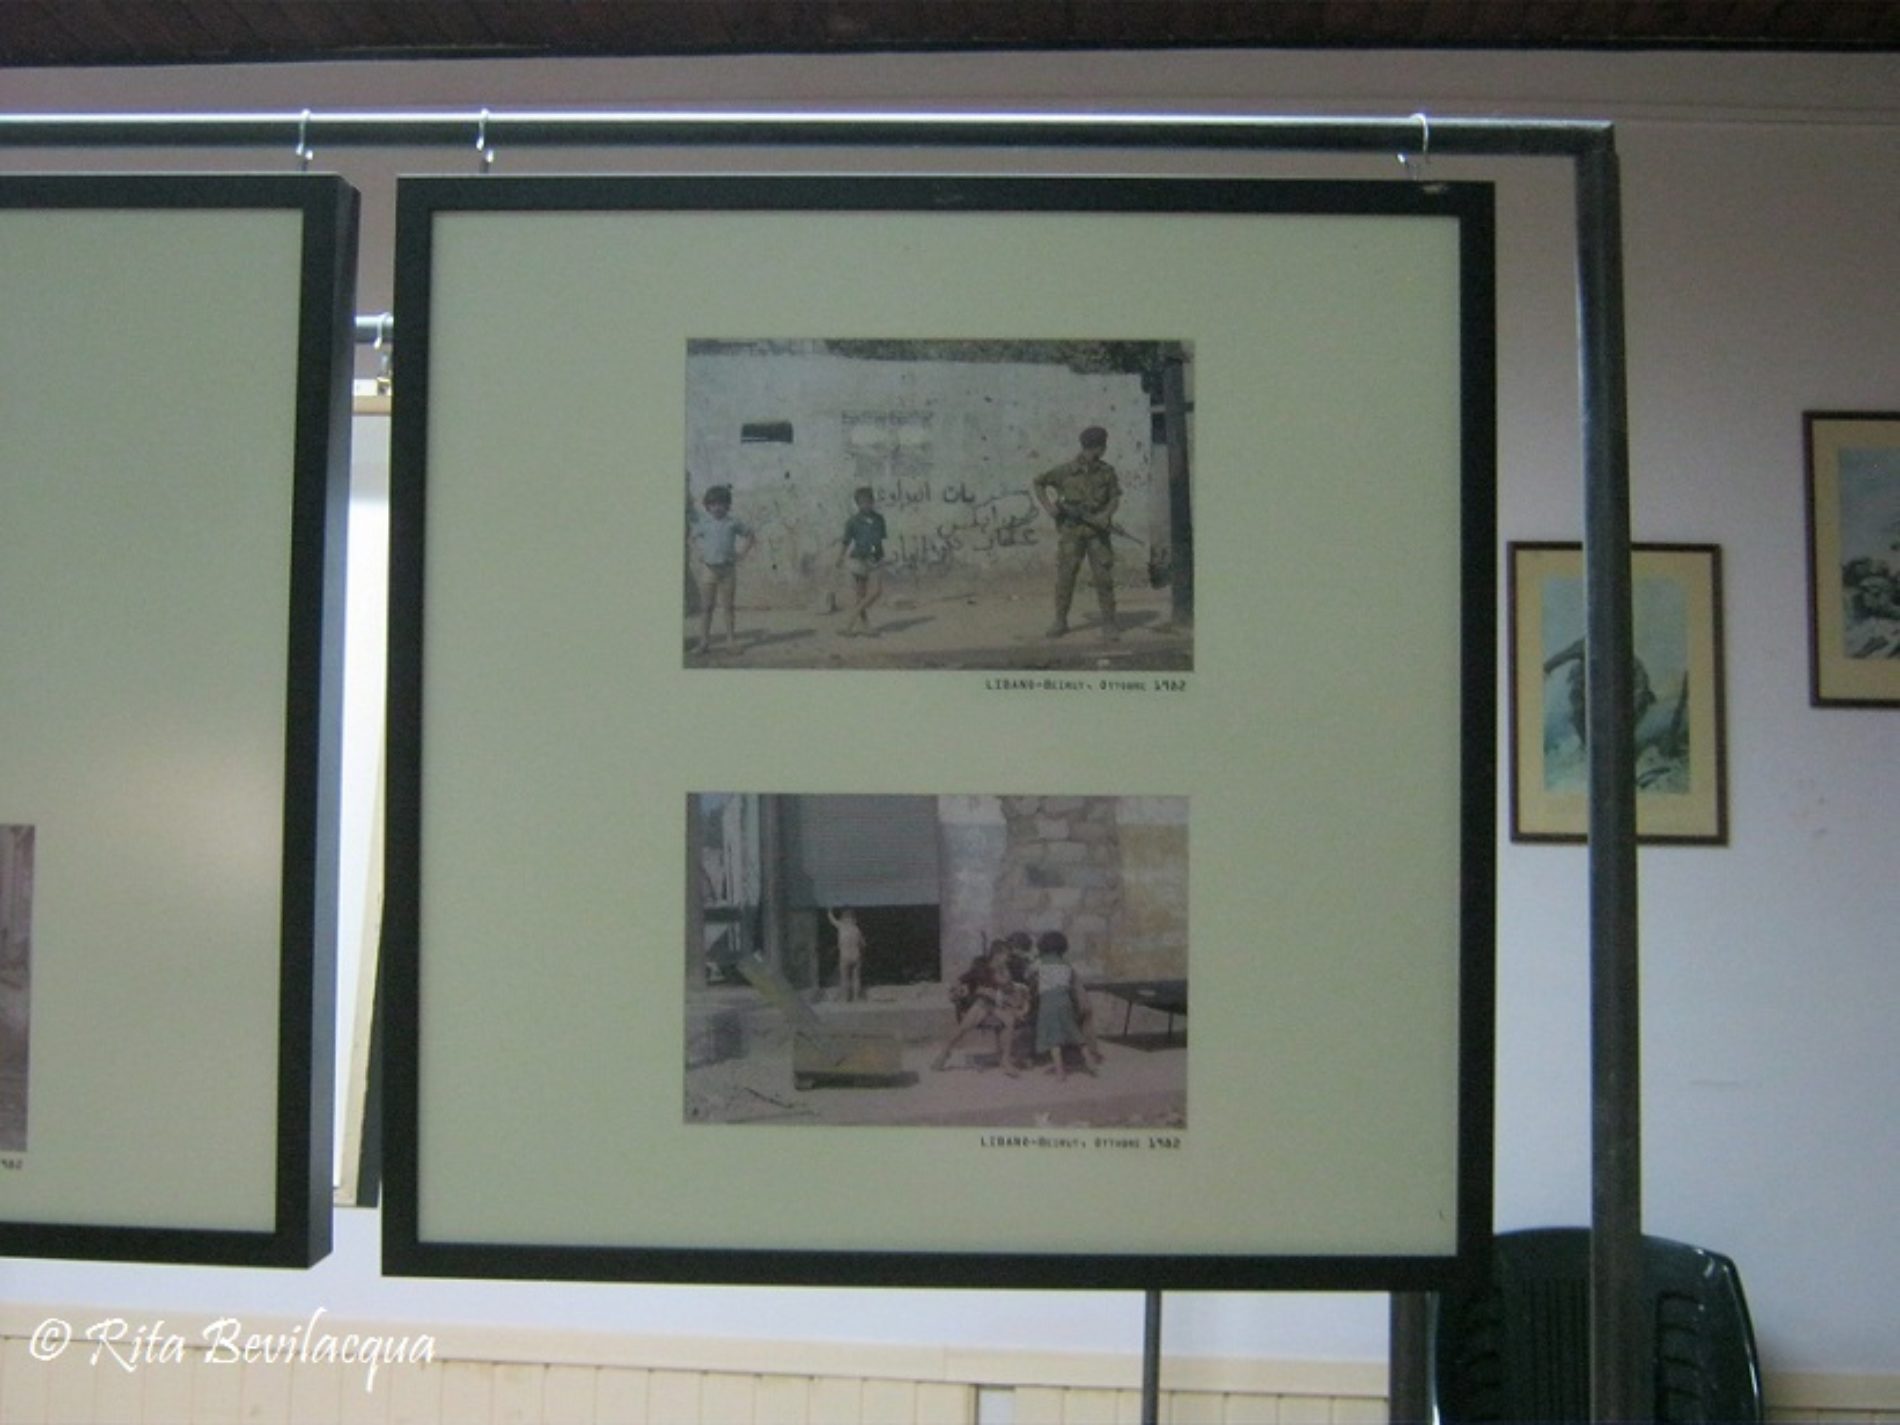 Inaugurata la mostra fotografica “Bambini nella Guerra”, nella sede dell’Ass. Naz. Carabinieri di Barrafranca